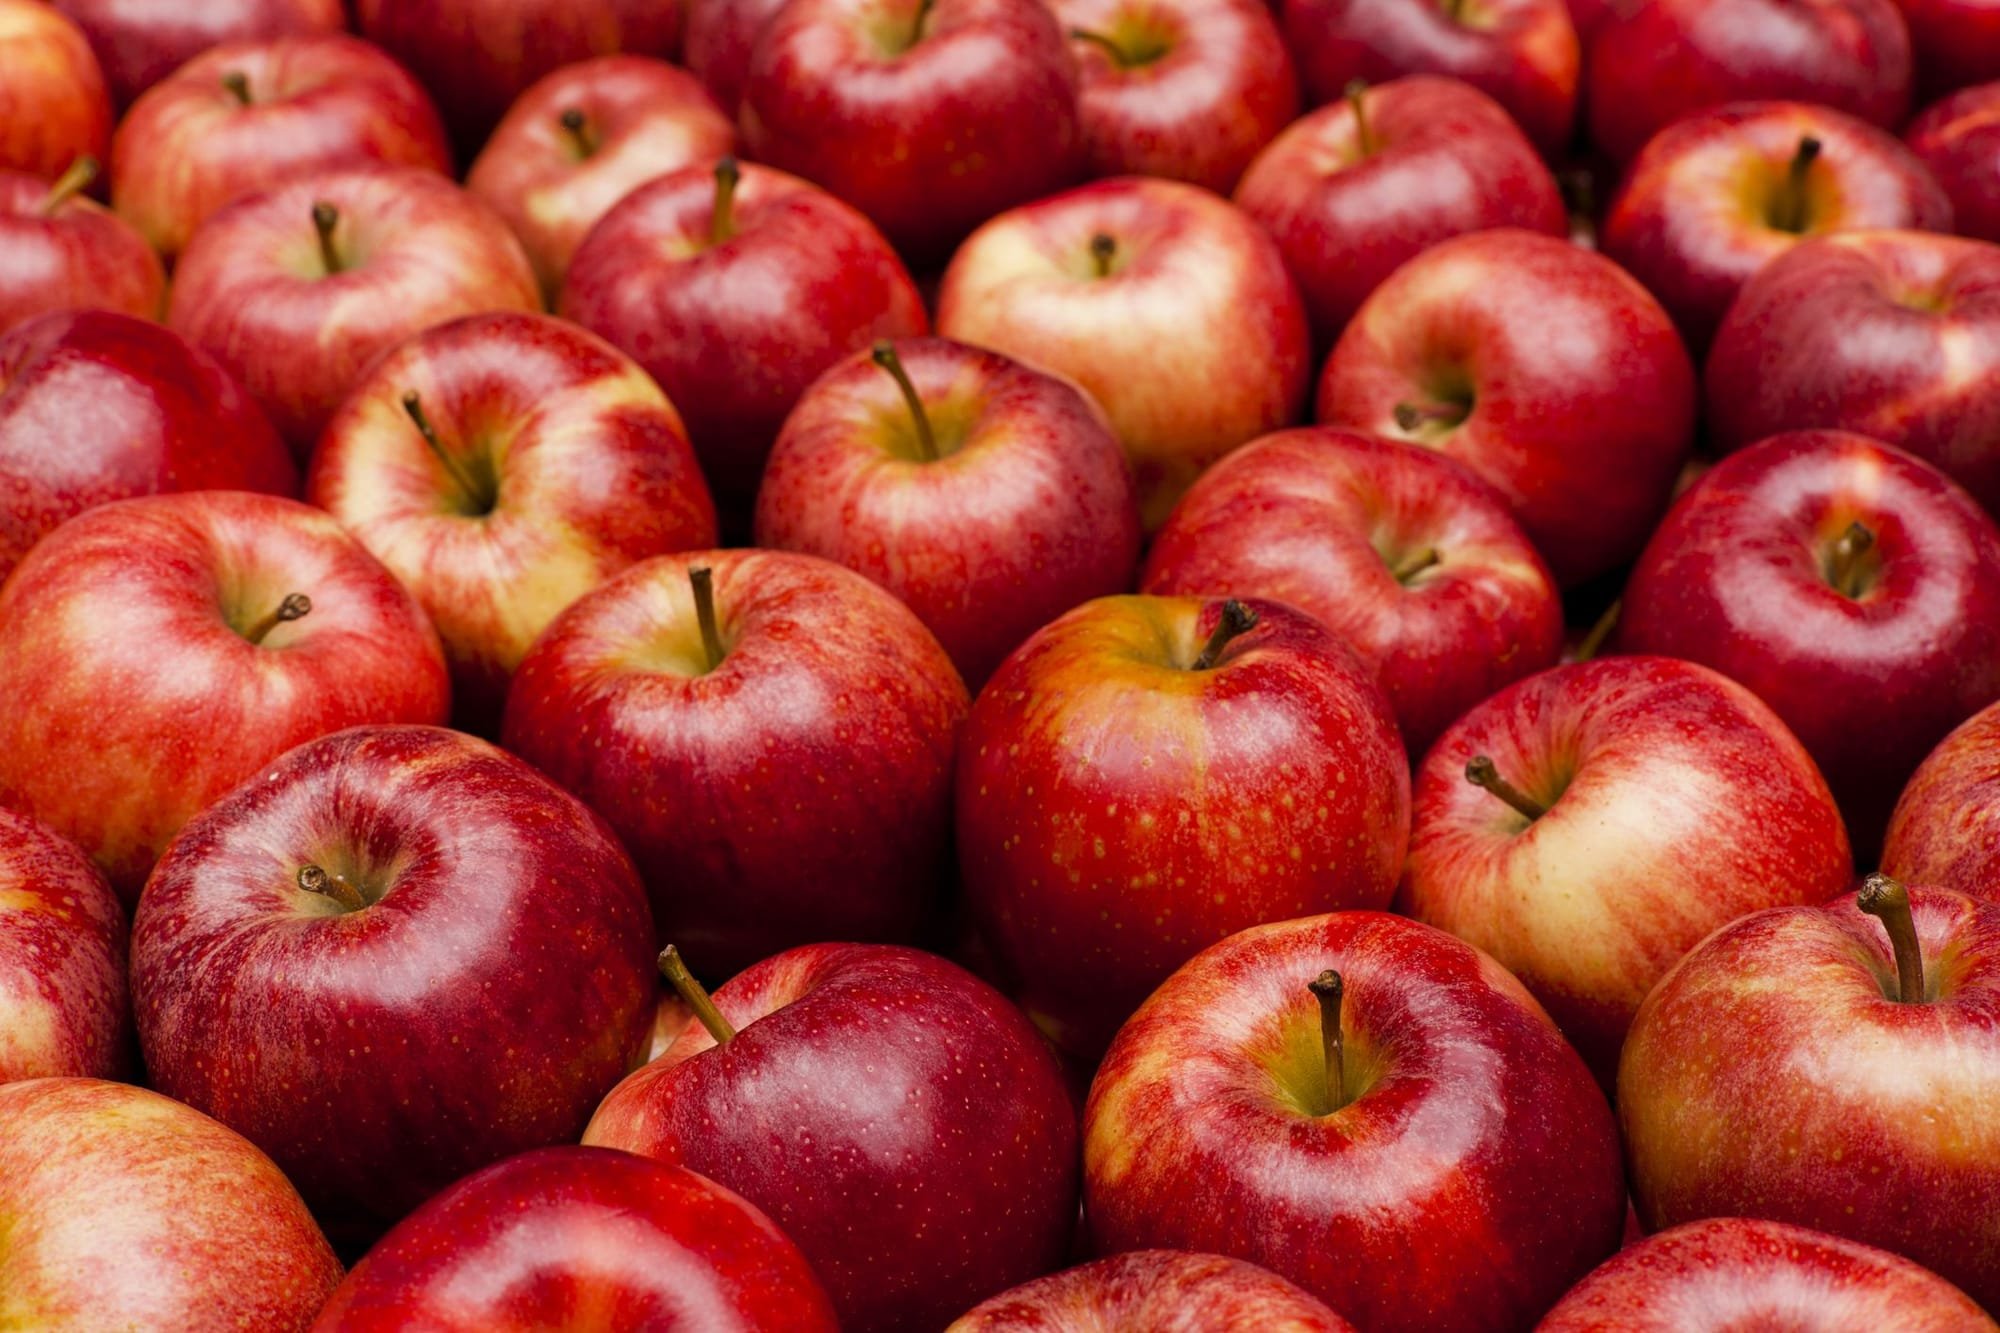 خبيرة تكشف فوائد التفاح في الوقاية من السرطان